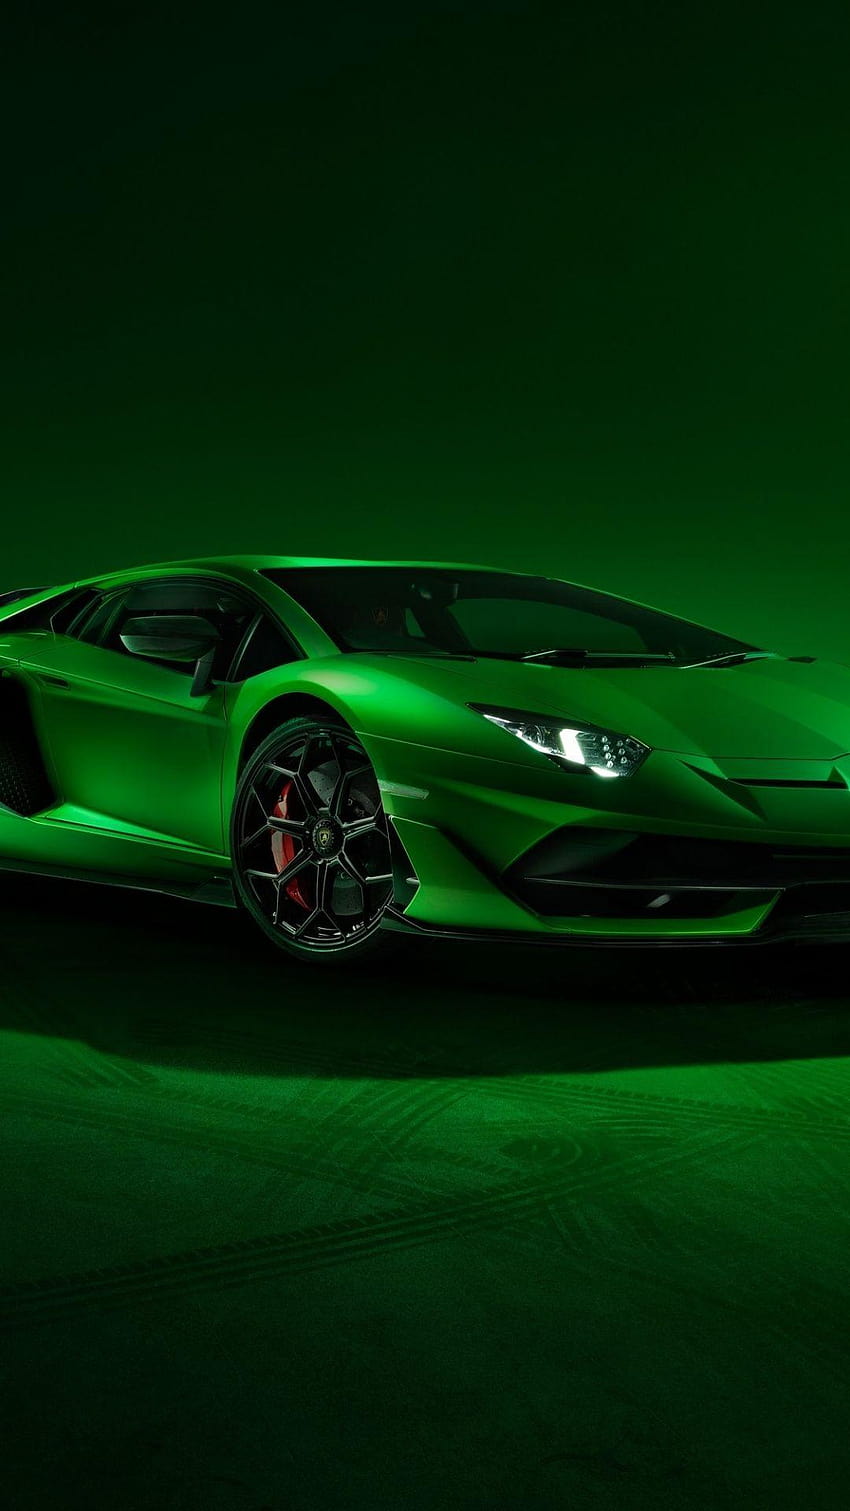 Green Lamborghini iPhone, lamborghini svj HD phone wallpaper | Pxfuel